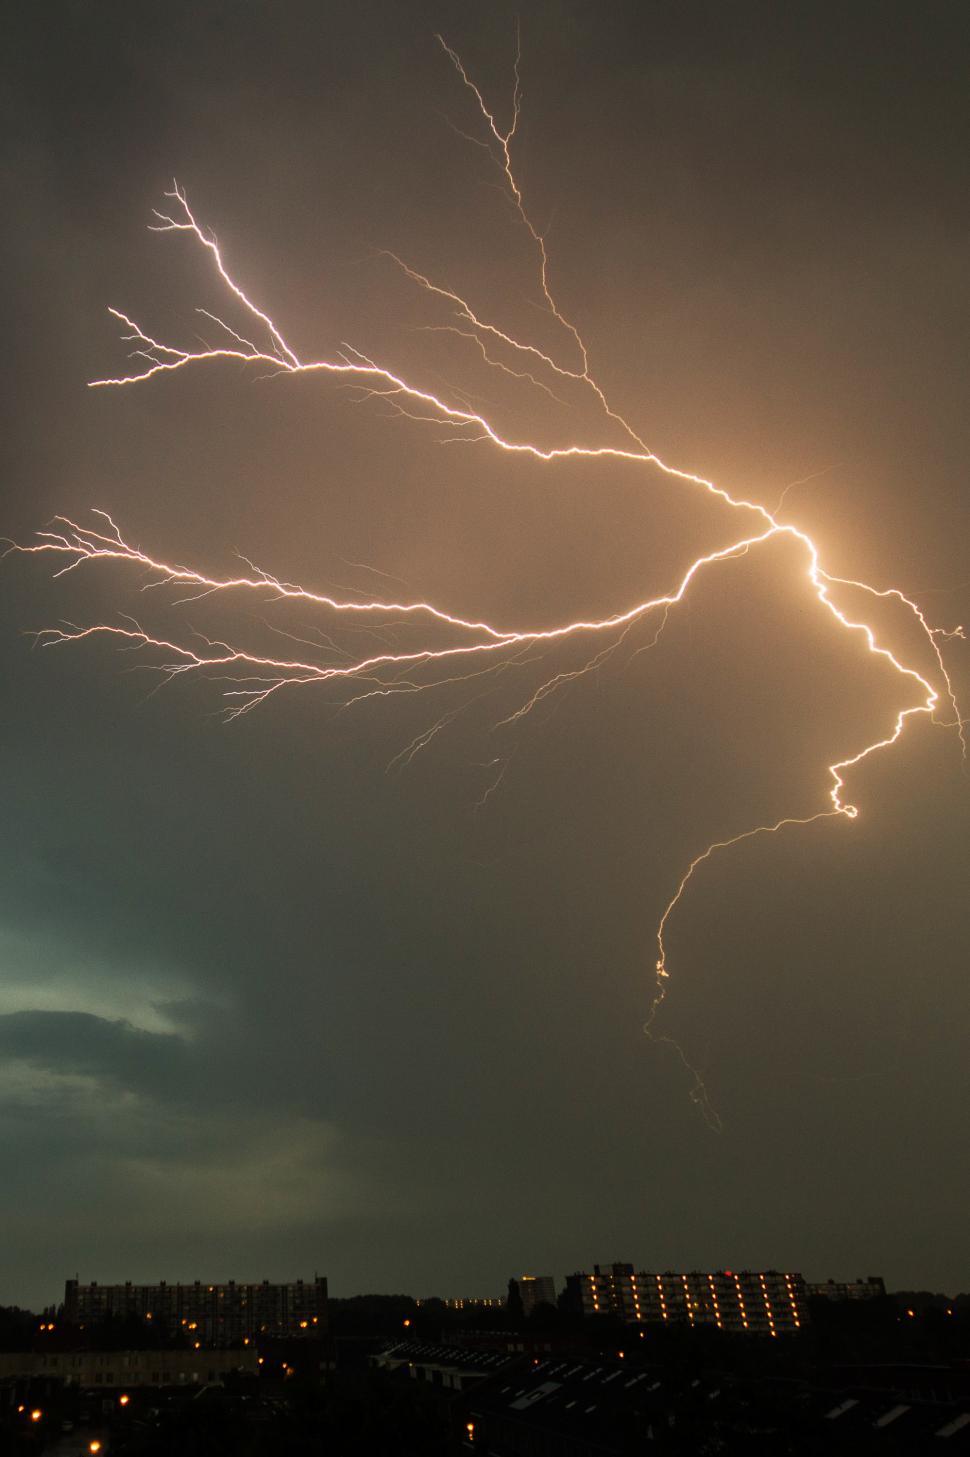 Free Image of Lightning Bolt Illuminates Sky Above City 